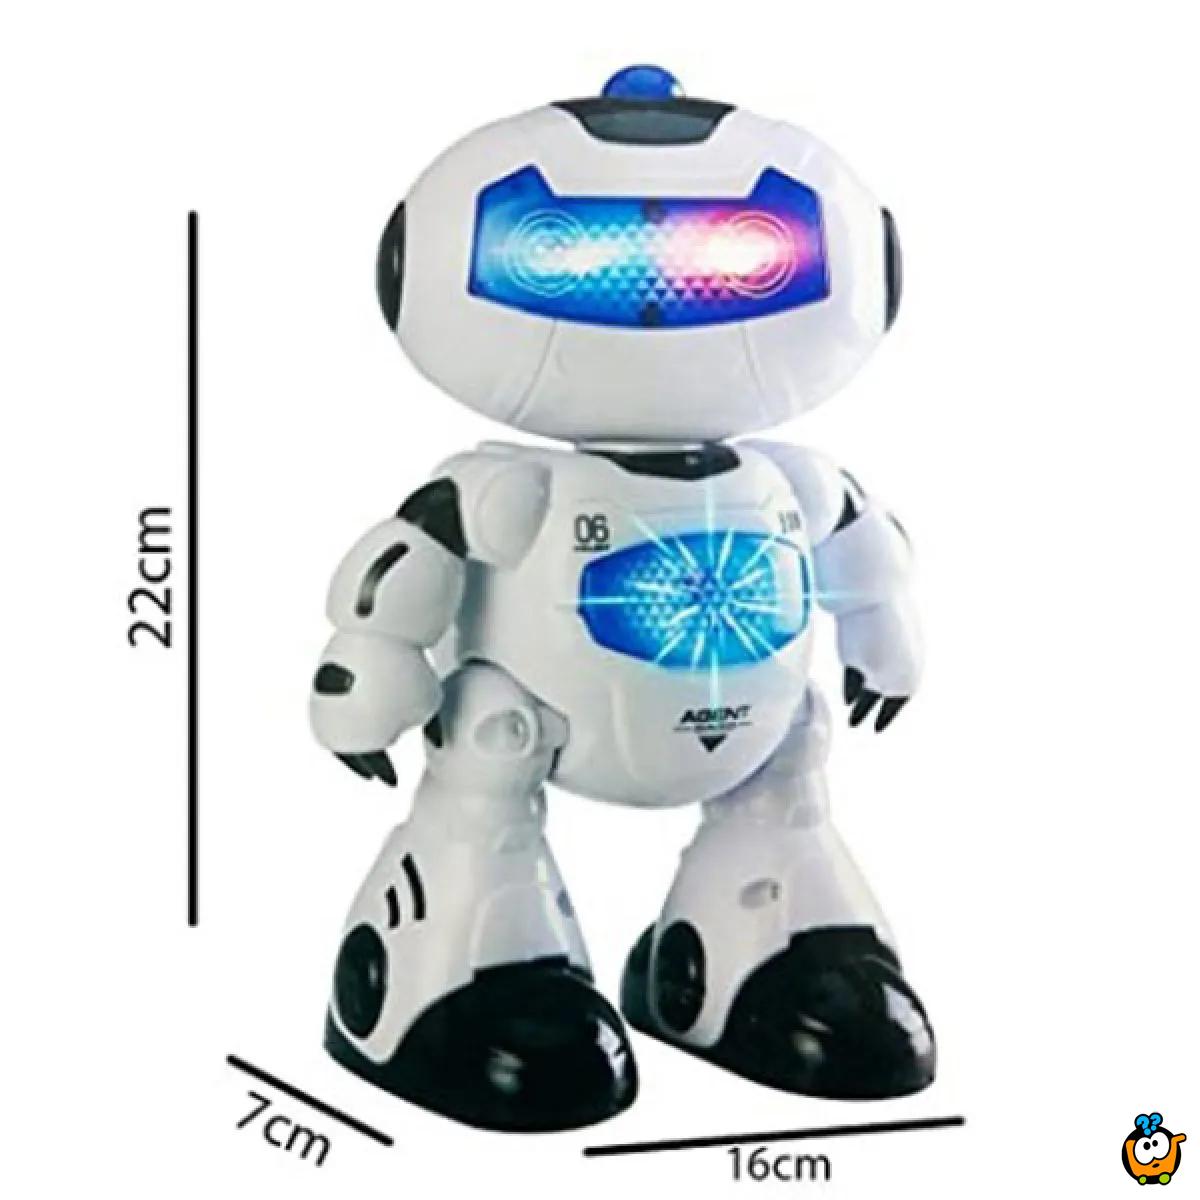 Boy Toymachine - Robot igračka koja se rotira 360 stepeni